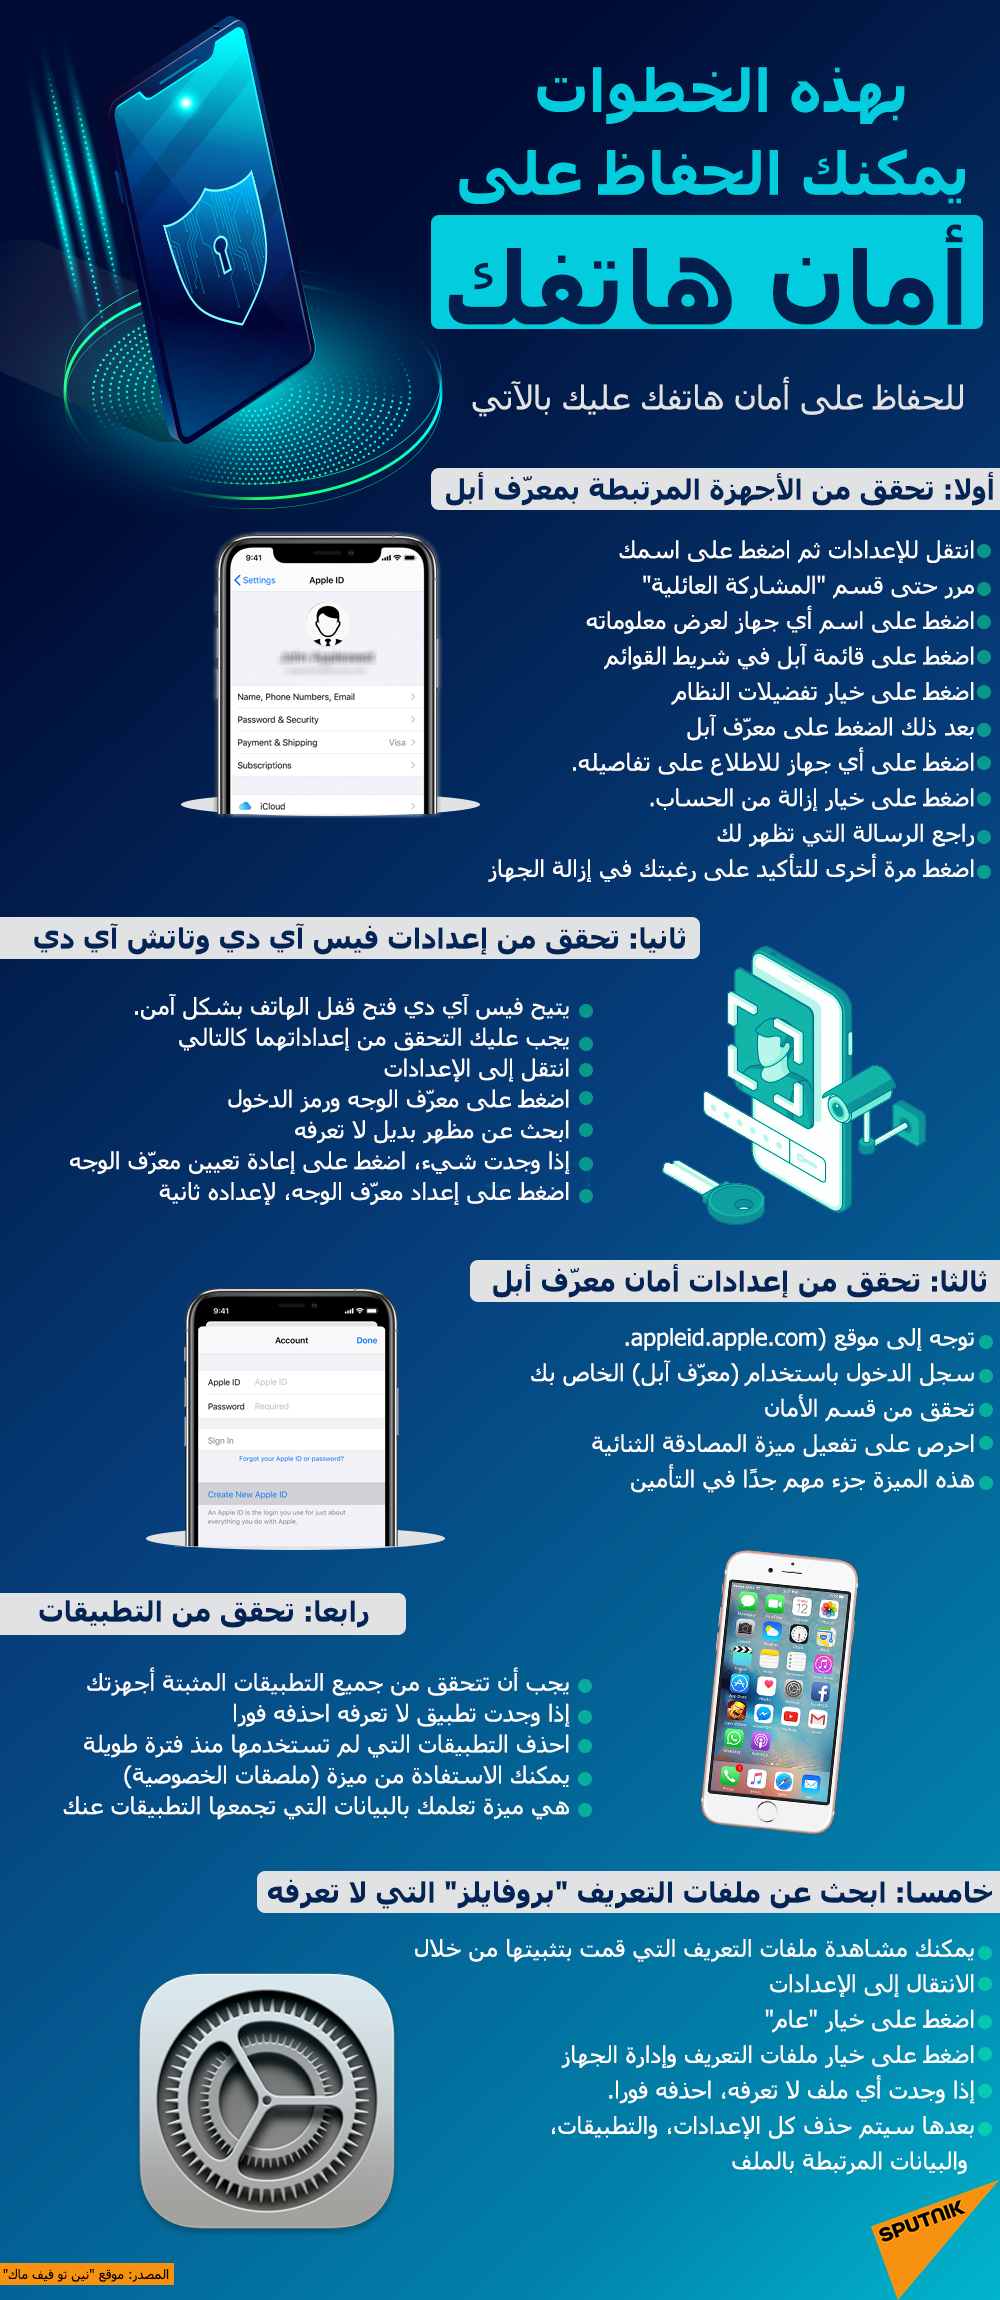 كيف تحافظ على أمان هاتفك - سبوتنيك عربي